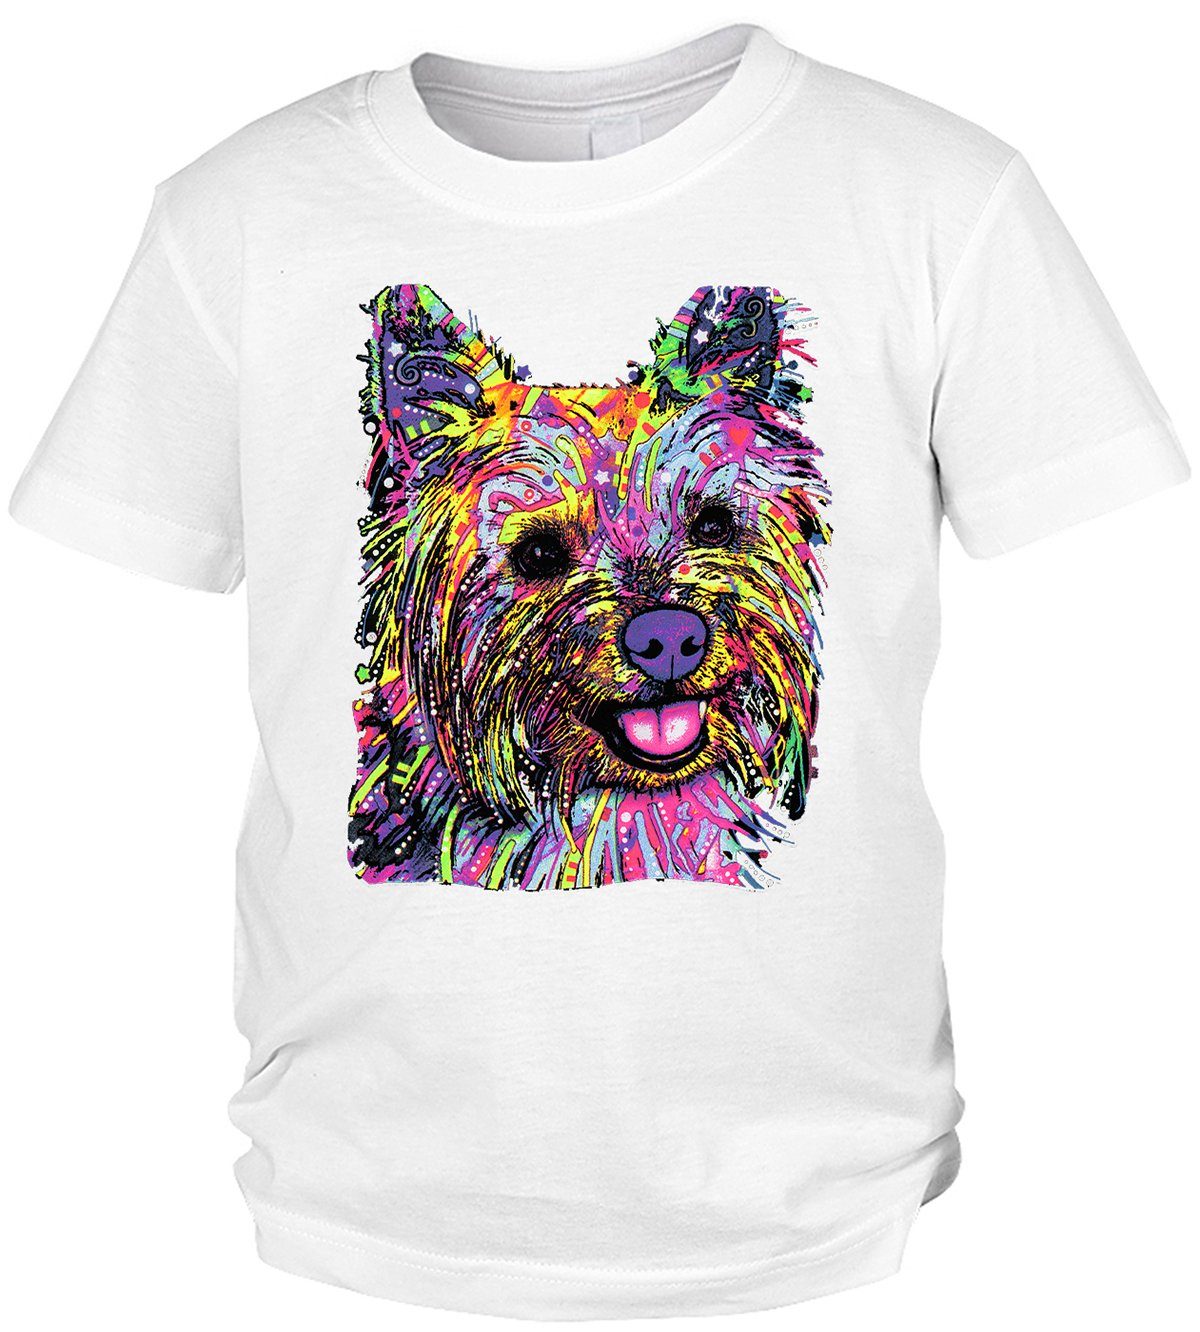 Kinder Shirts Tini - Shirts Print-Shirt Yorkshire Terrier Kinder Tshirt buntes Hundemotiv Kindershirt : Yorkie